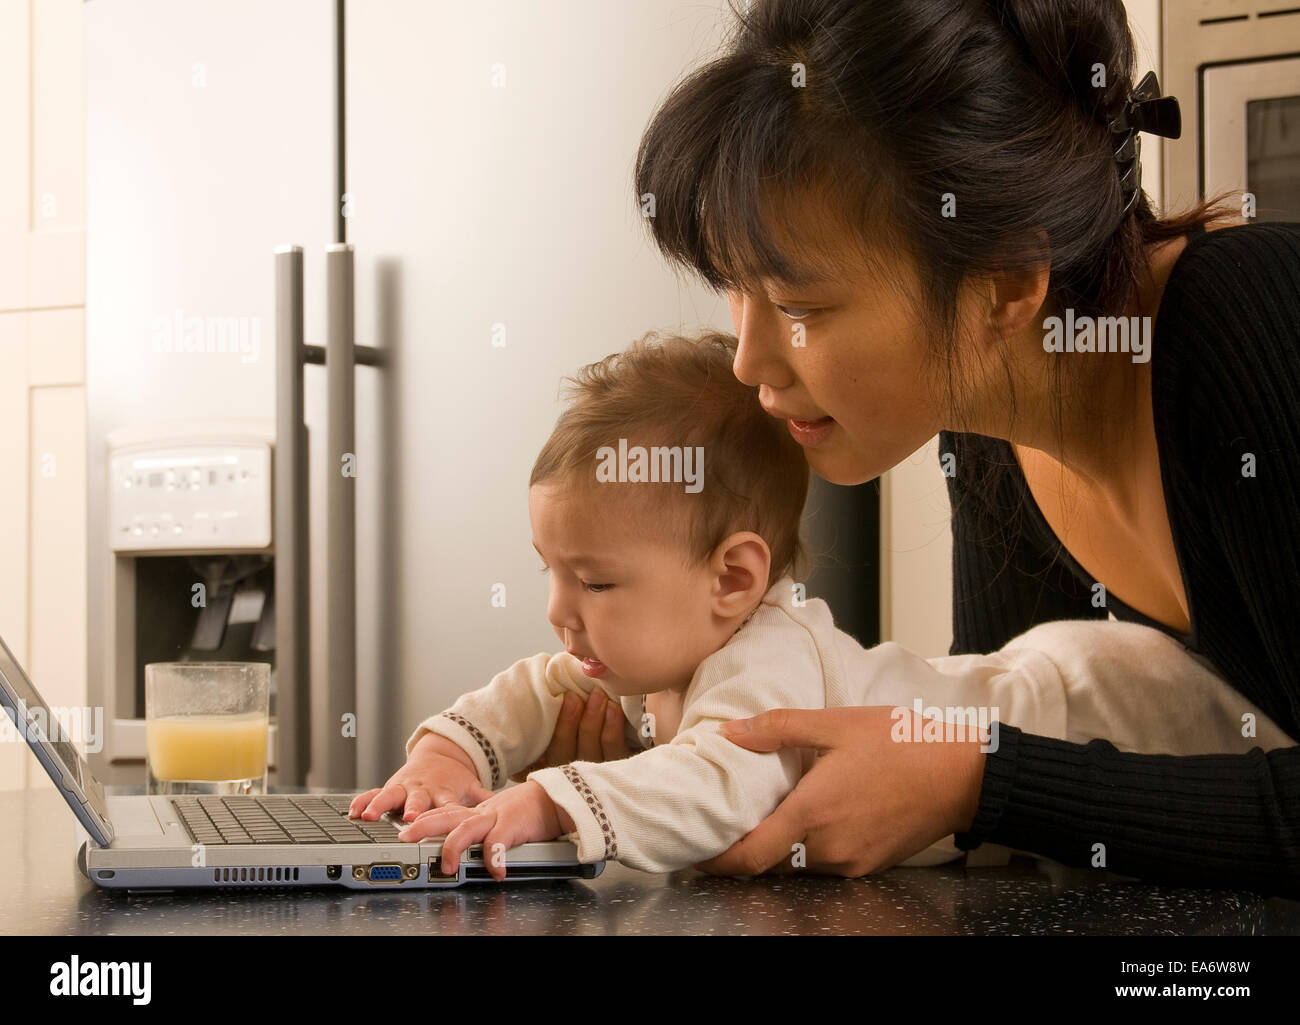 beschäftigt junge koreanische asiatische Mama mit Laptop-Computer in der modernen Küche hält 5 Monate altes gemischt Rennen (asiatische / caucasian) baby Stockfoto